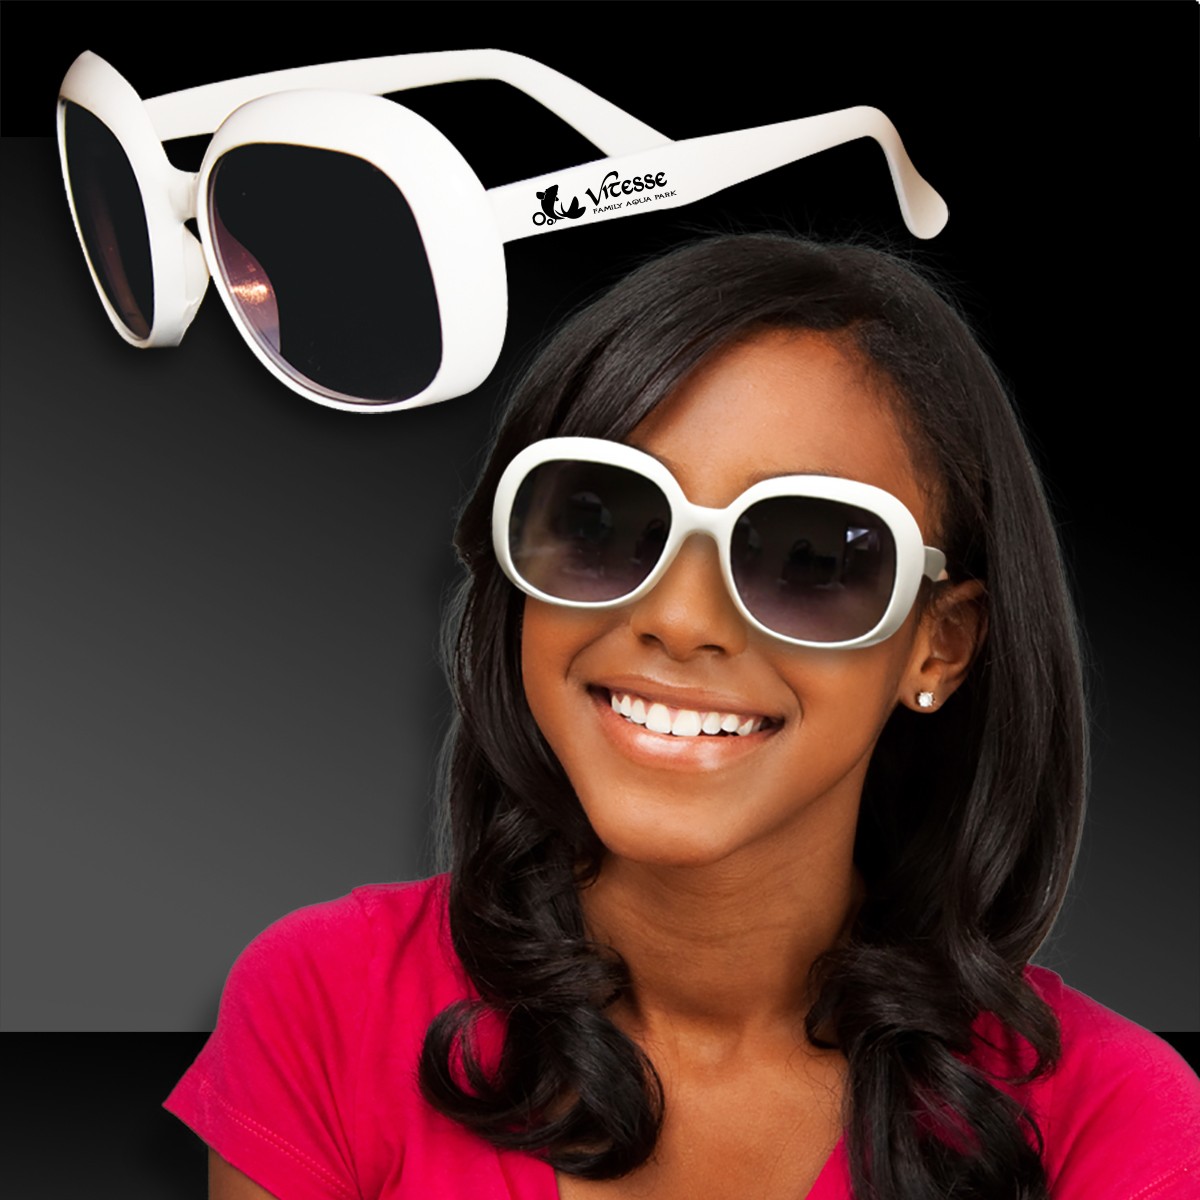 White Fashion Sunglasses Sunglasses Eyeglasses And Masks